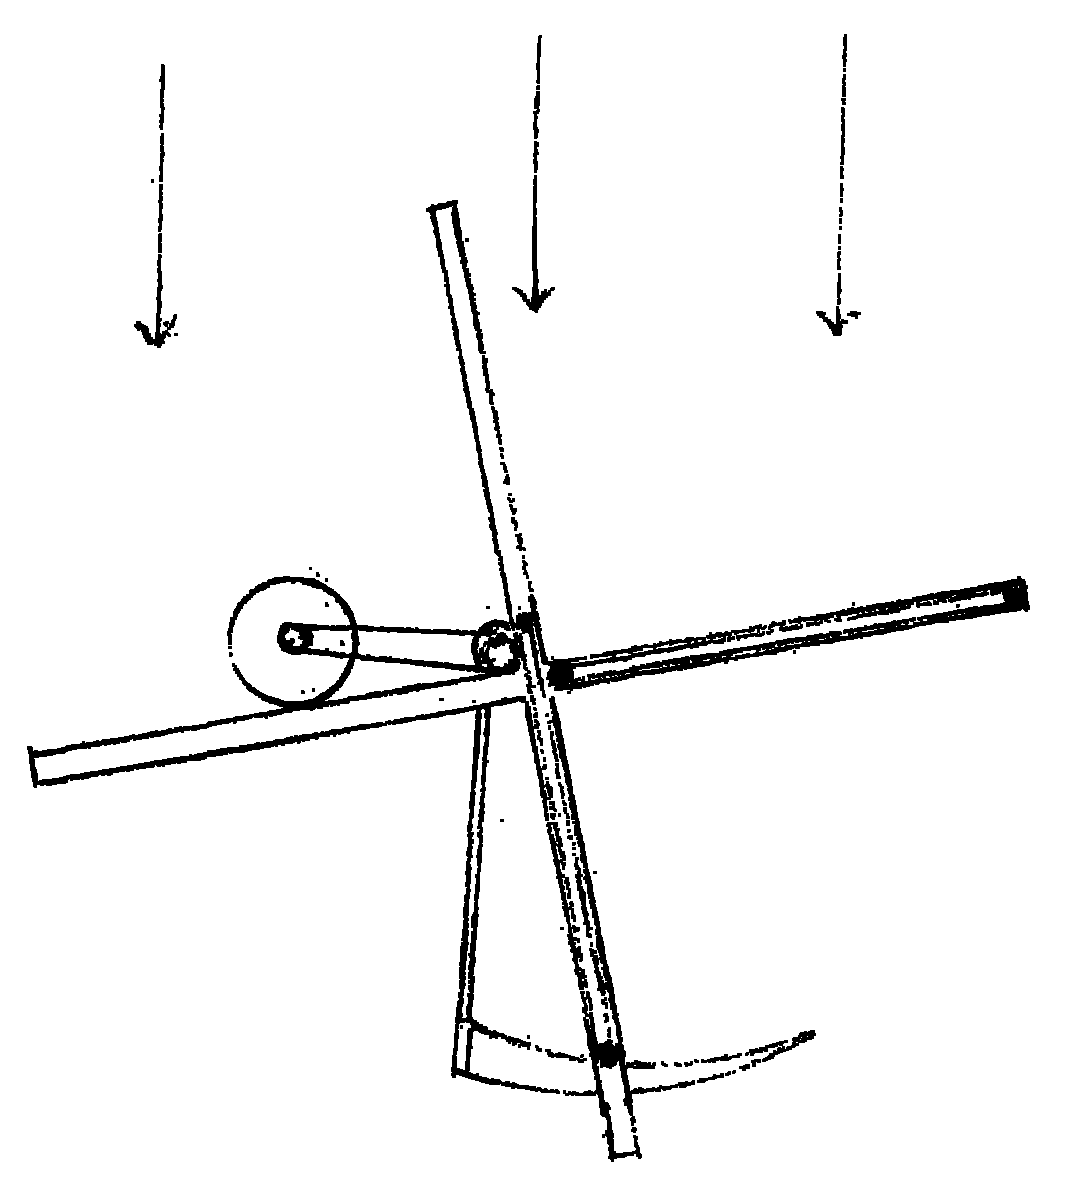 Sliding door type vertical-axis wind driven generator